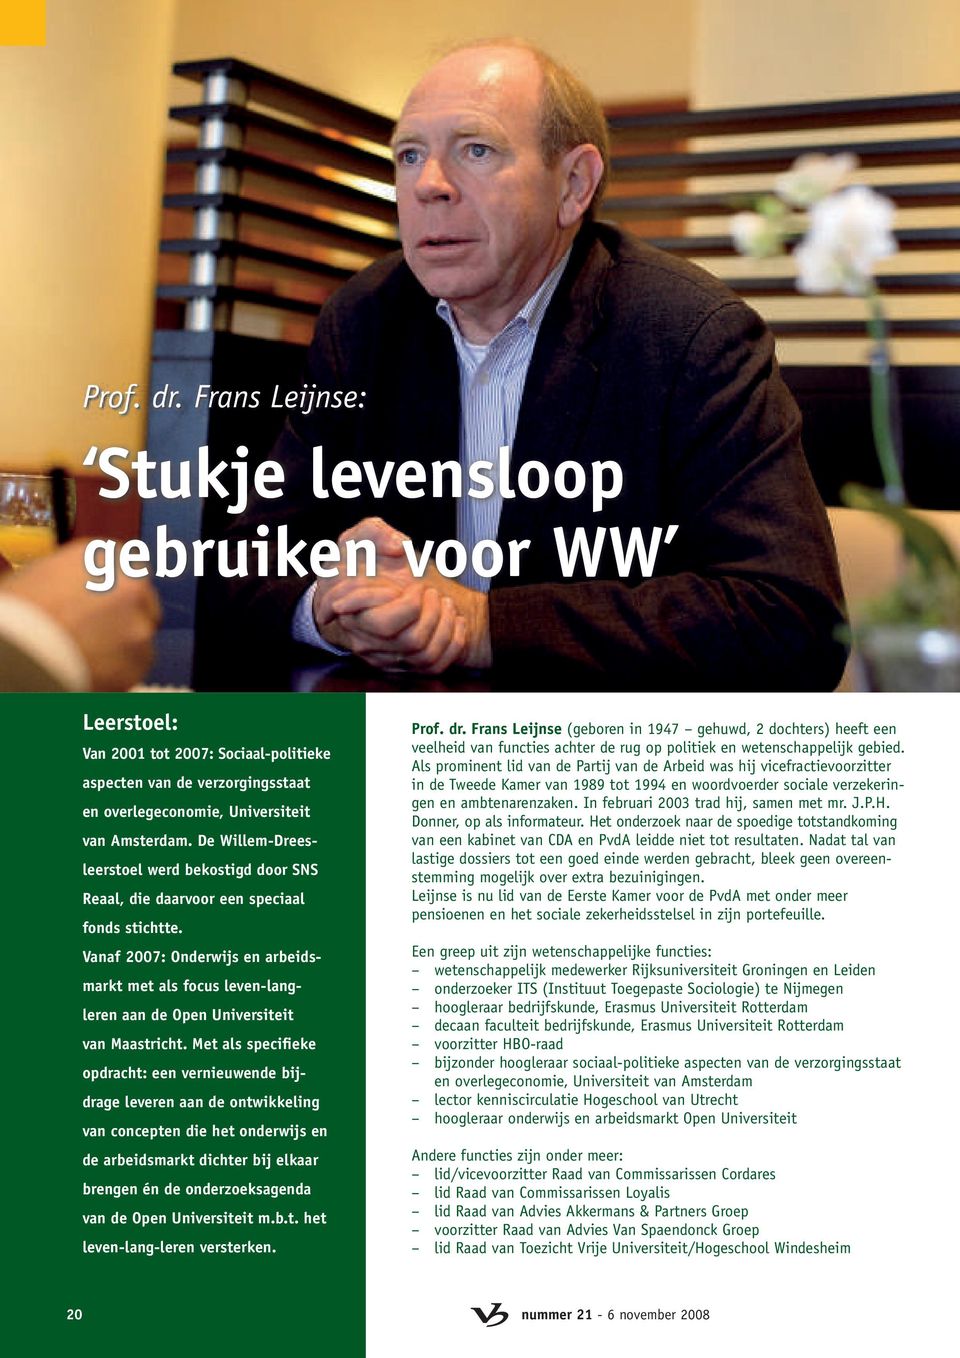 Vanaf 2007: Onderwijs en arbeidsmarkt met als focus leven-langleren aan de Open Universiteit van Maastricht.